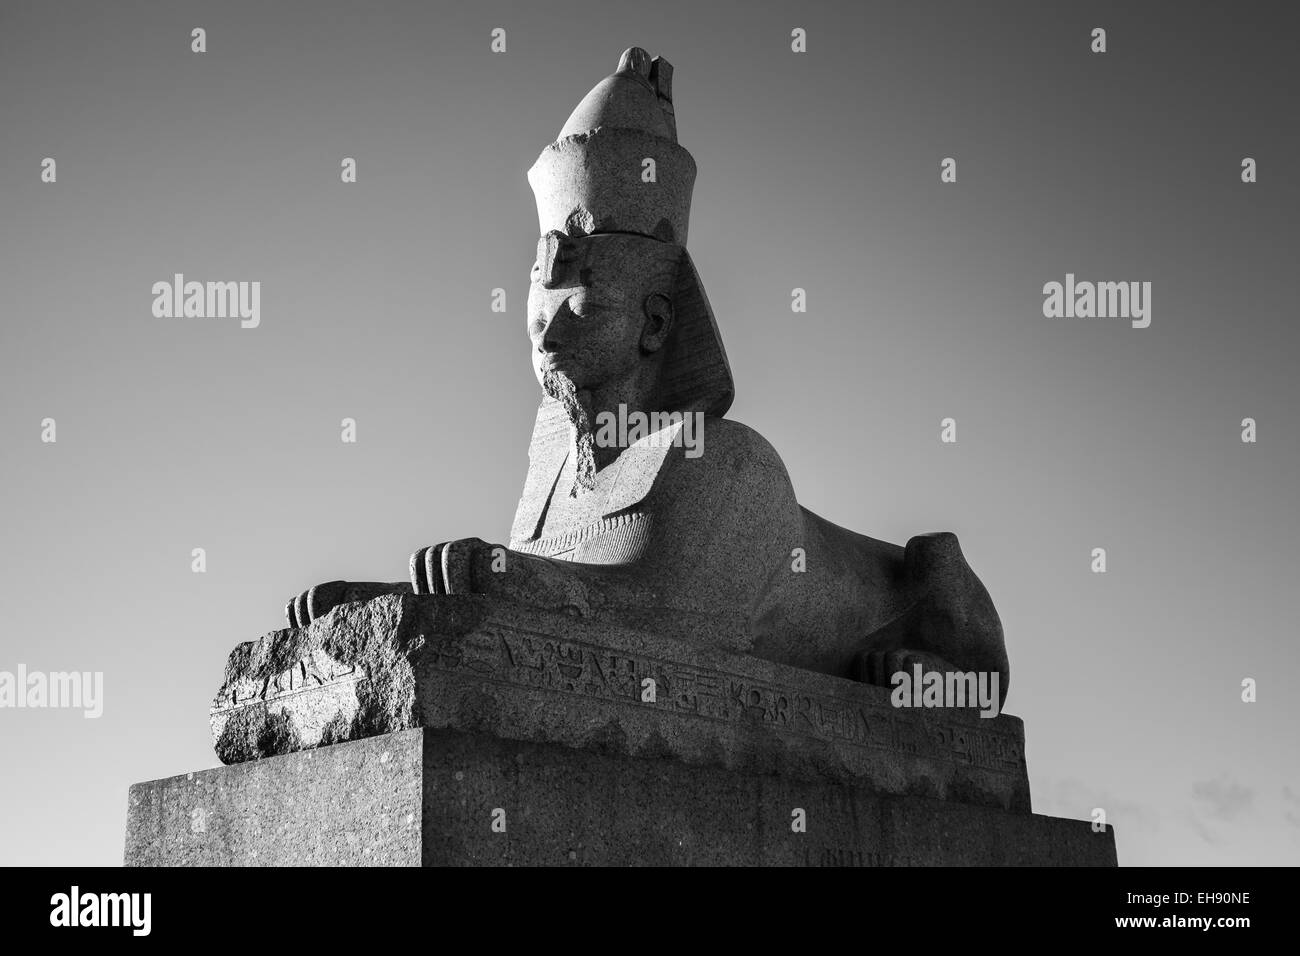 Granit-Sphinx. Schwarz / weiß Foto des alten Denkmals. Wahrzeichen des Neva Flusses Küste in St.Petersburg, Russland Stockfoto